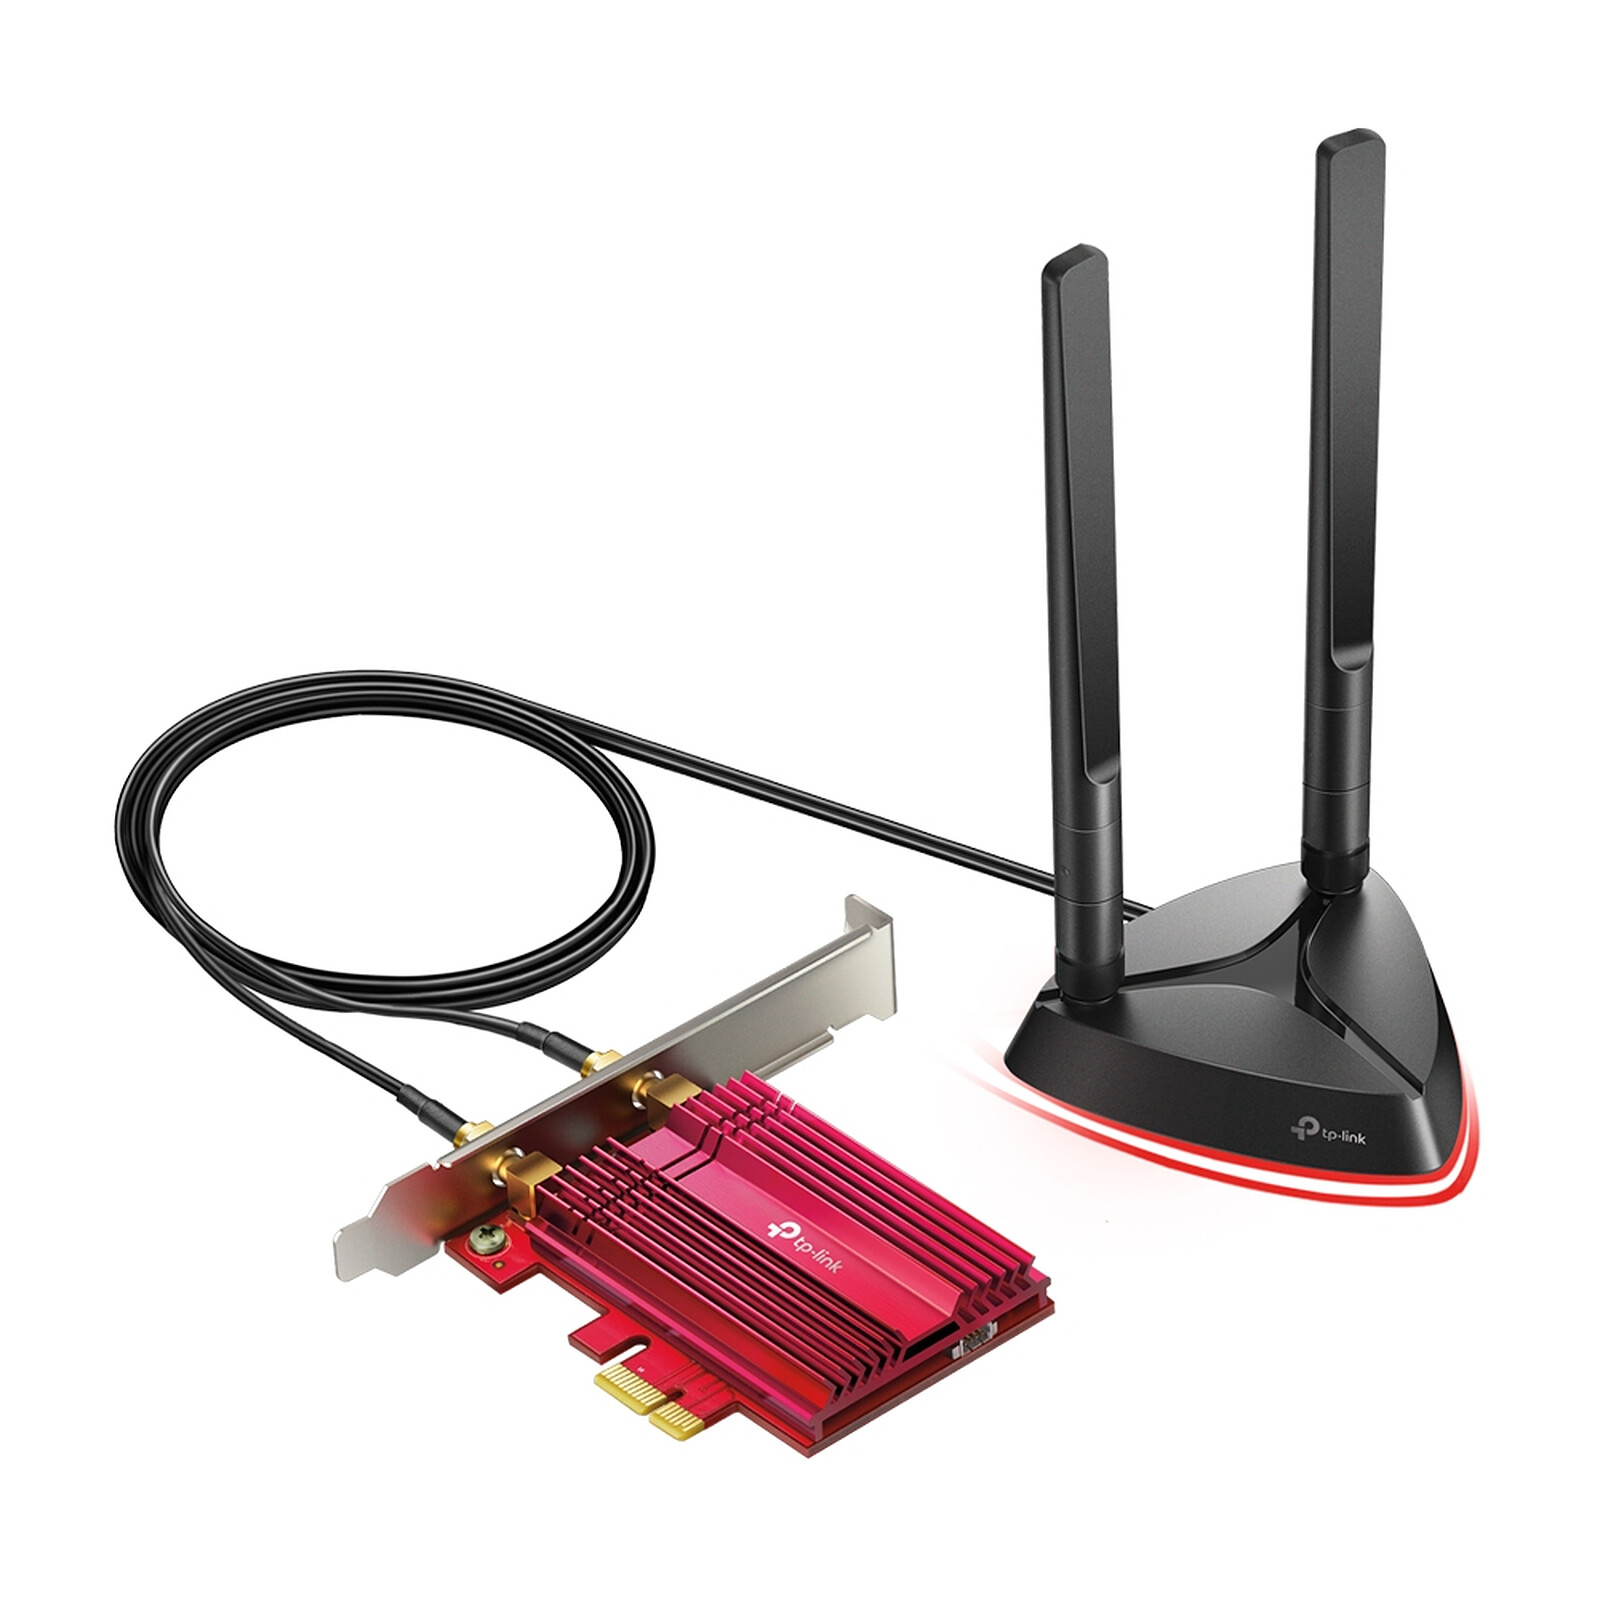 Asus PCE-AX3000 Wi-Fi 6 PCIe AX3000 - Tarjeta Red